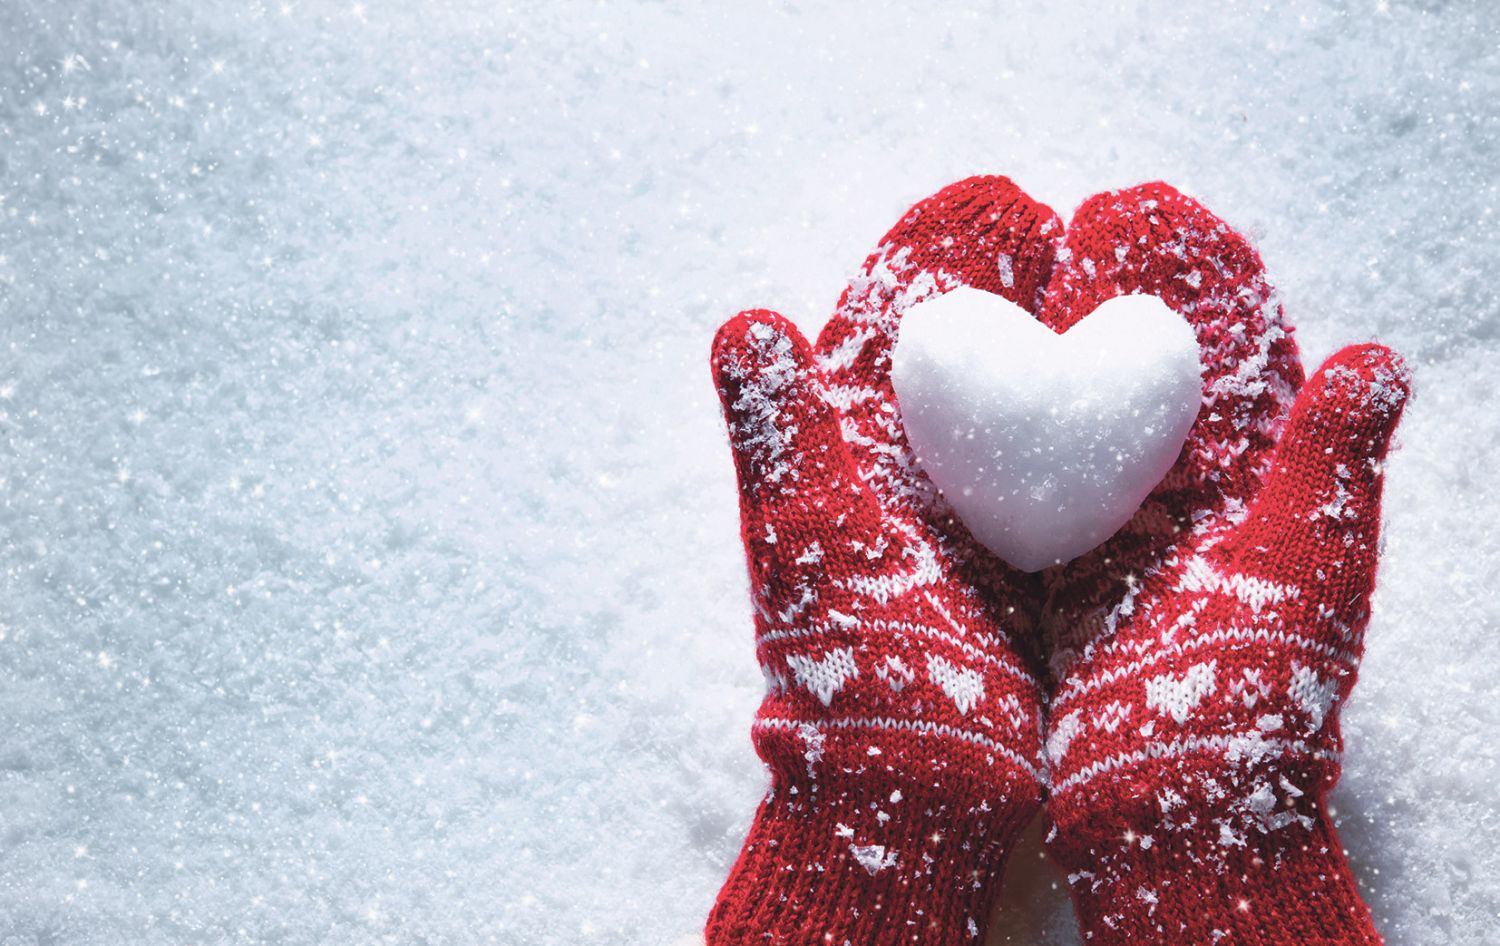 Über einer Schneedecke halten zwei rote Handschuhe ein Herz aus Schnee.